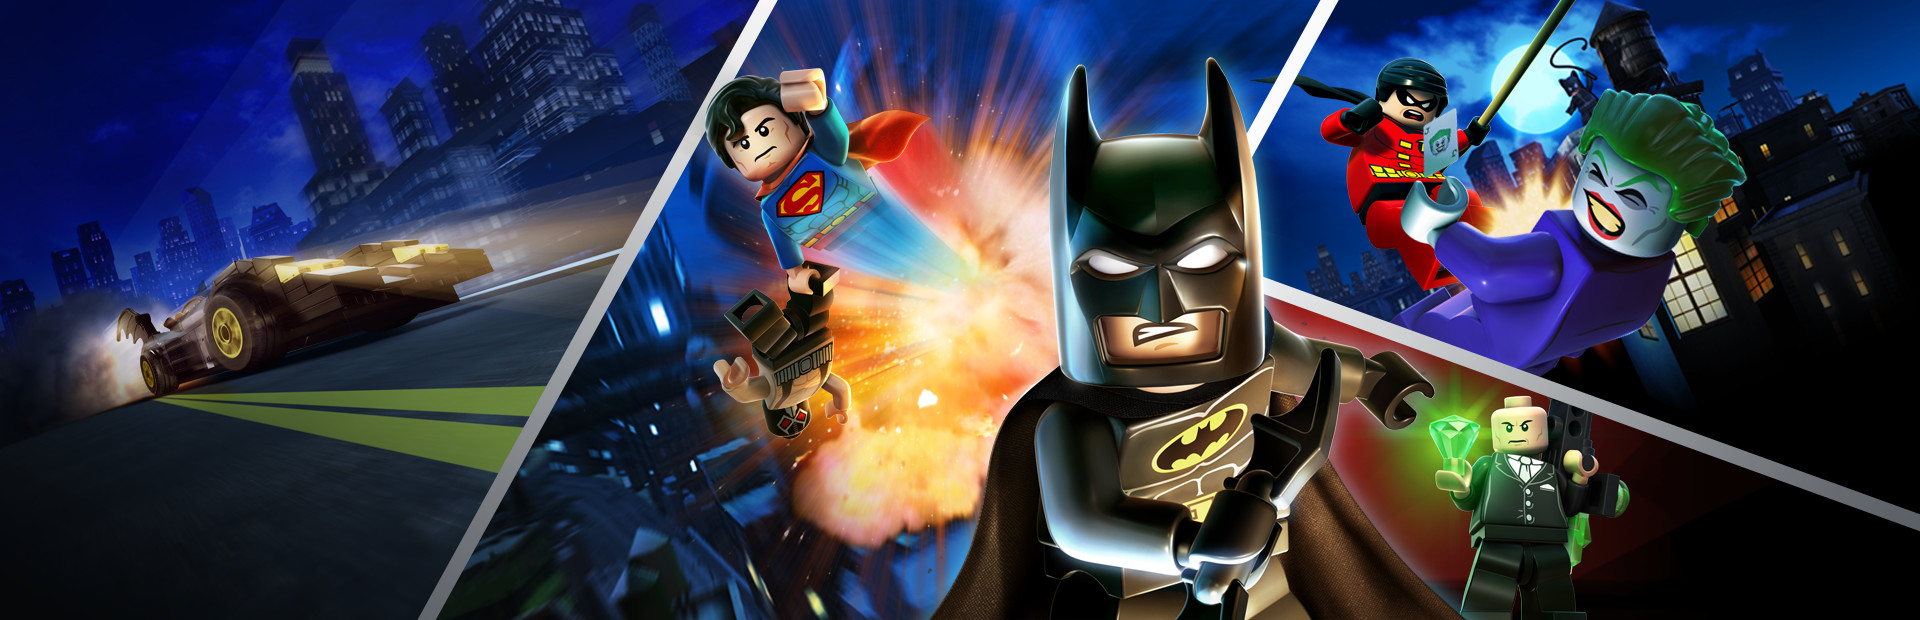 LEGO® Batman™ 2: DC Super Heroes cover image